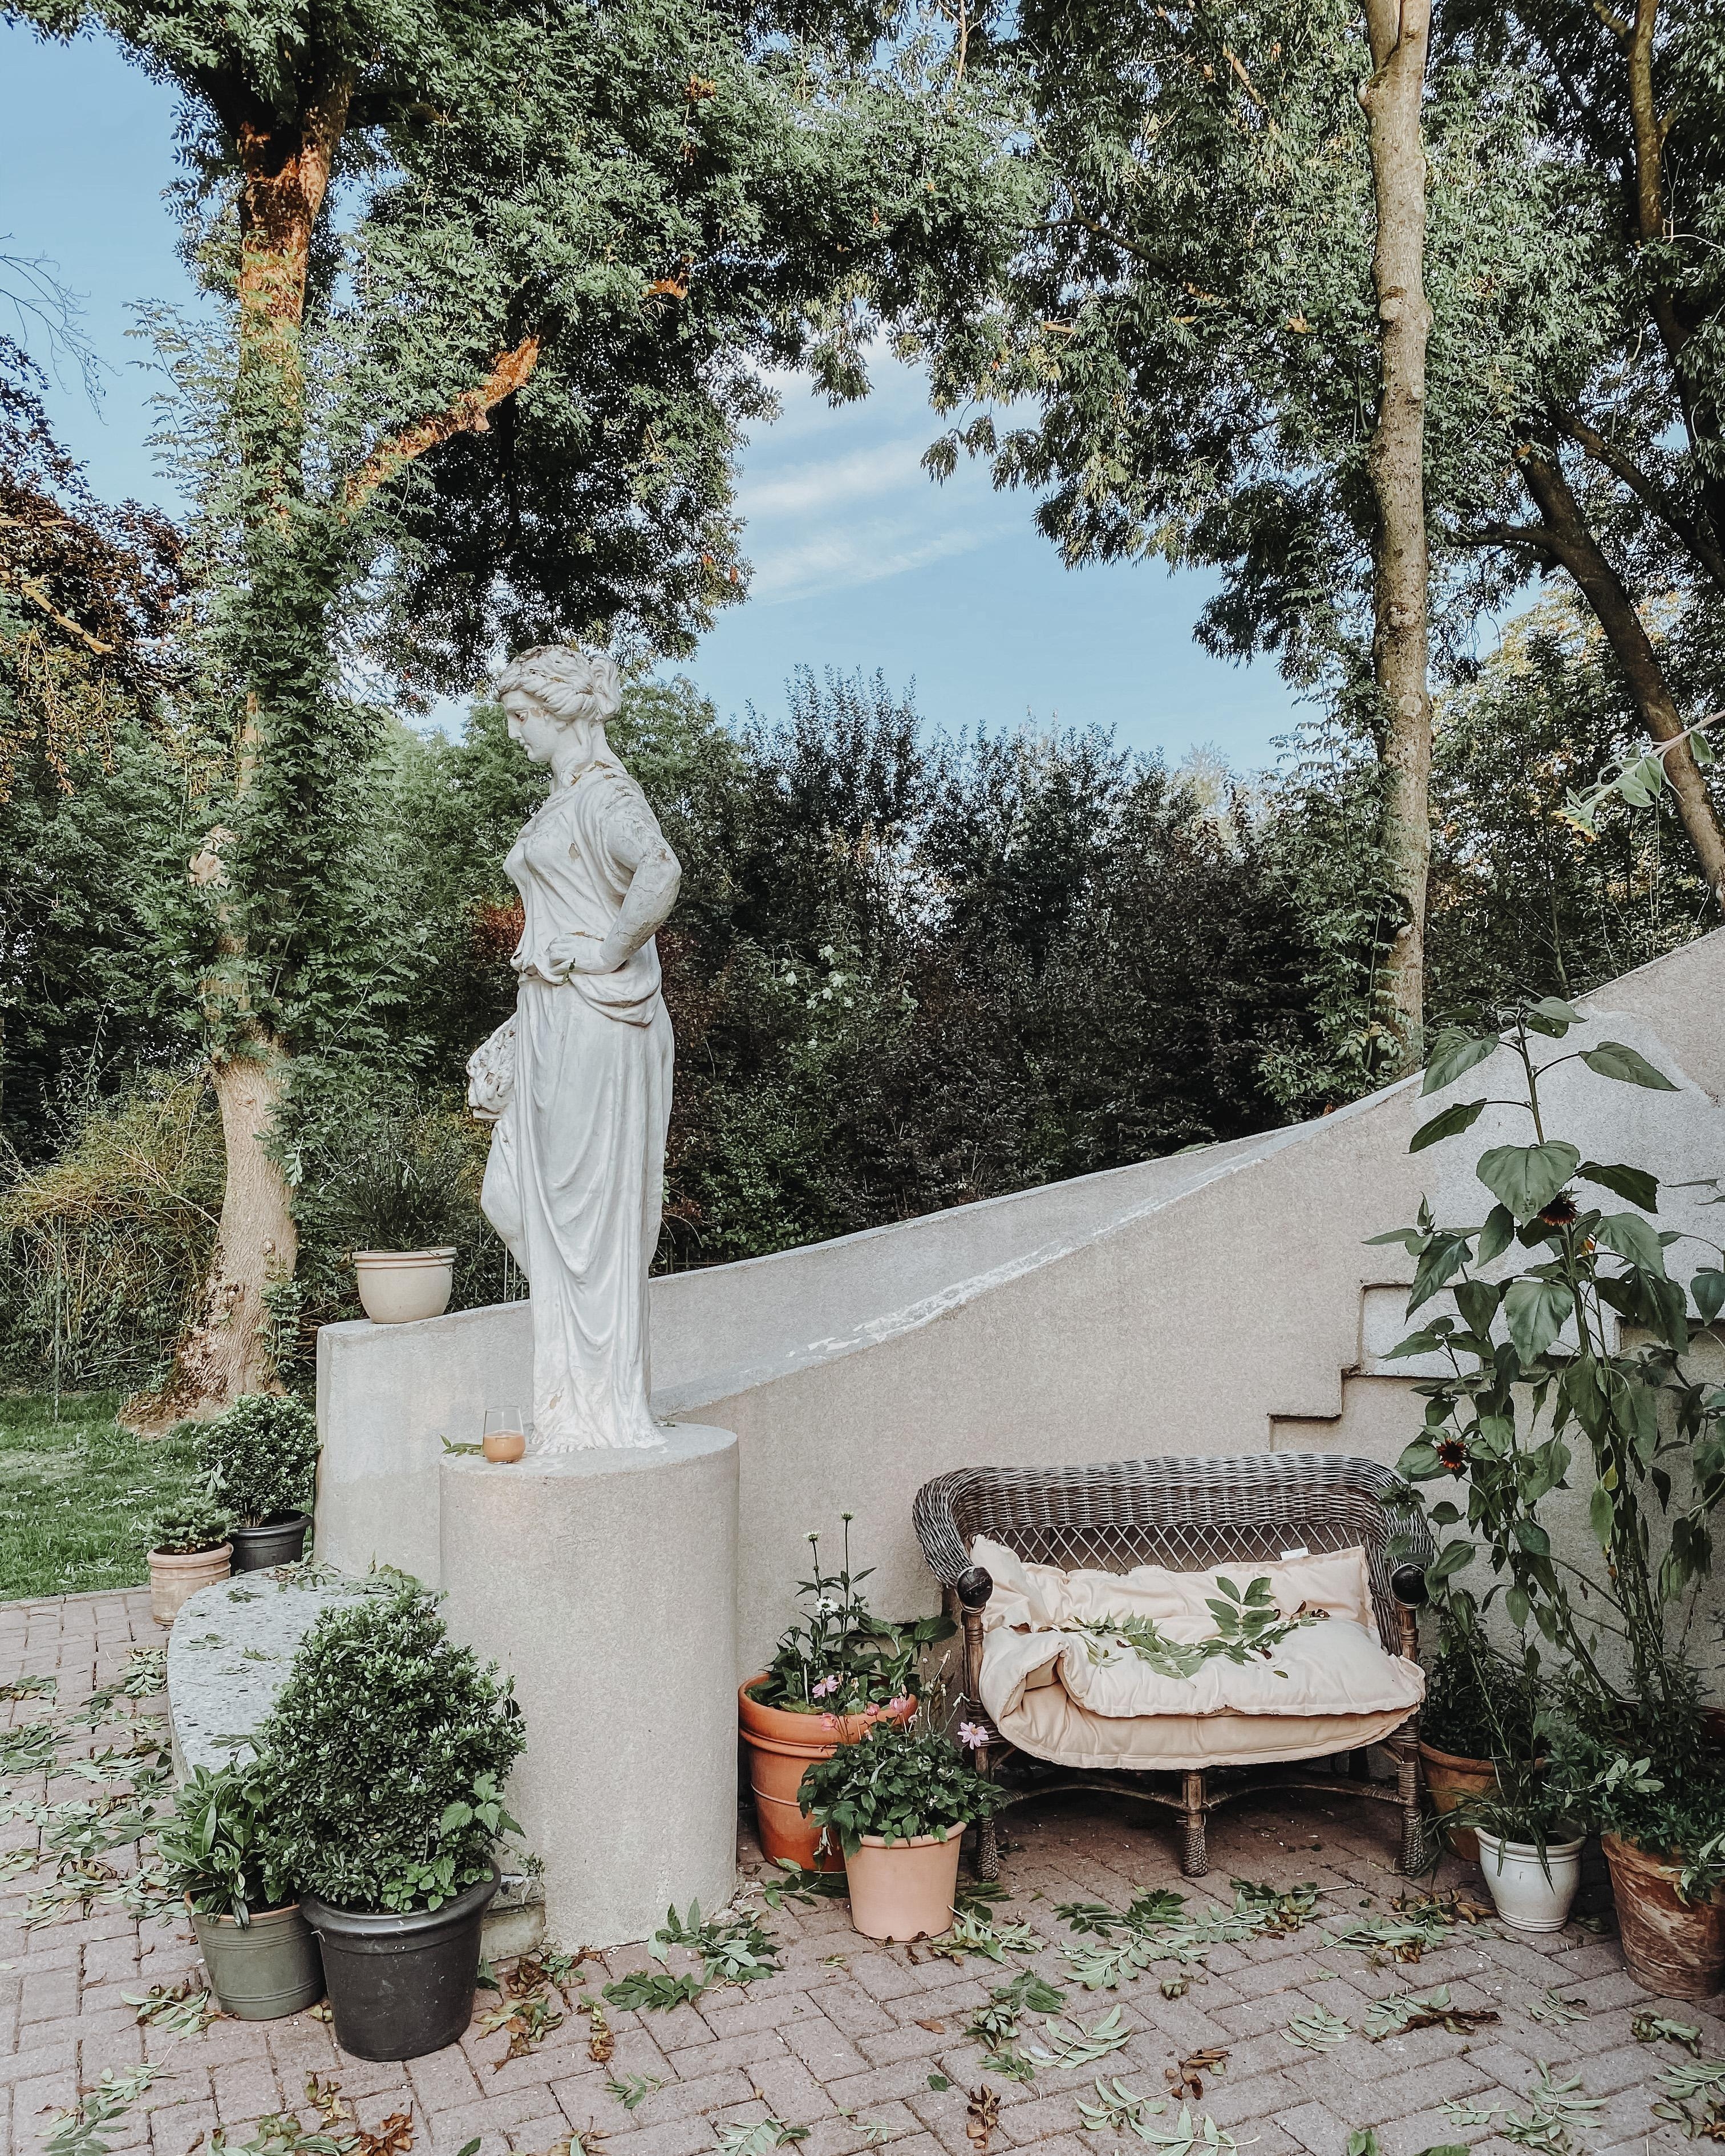 Bereits am Treppenaufgang wird man von der alten Statue „Herbst“ empfangen, die über das Haus wacht. 